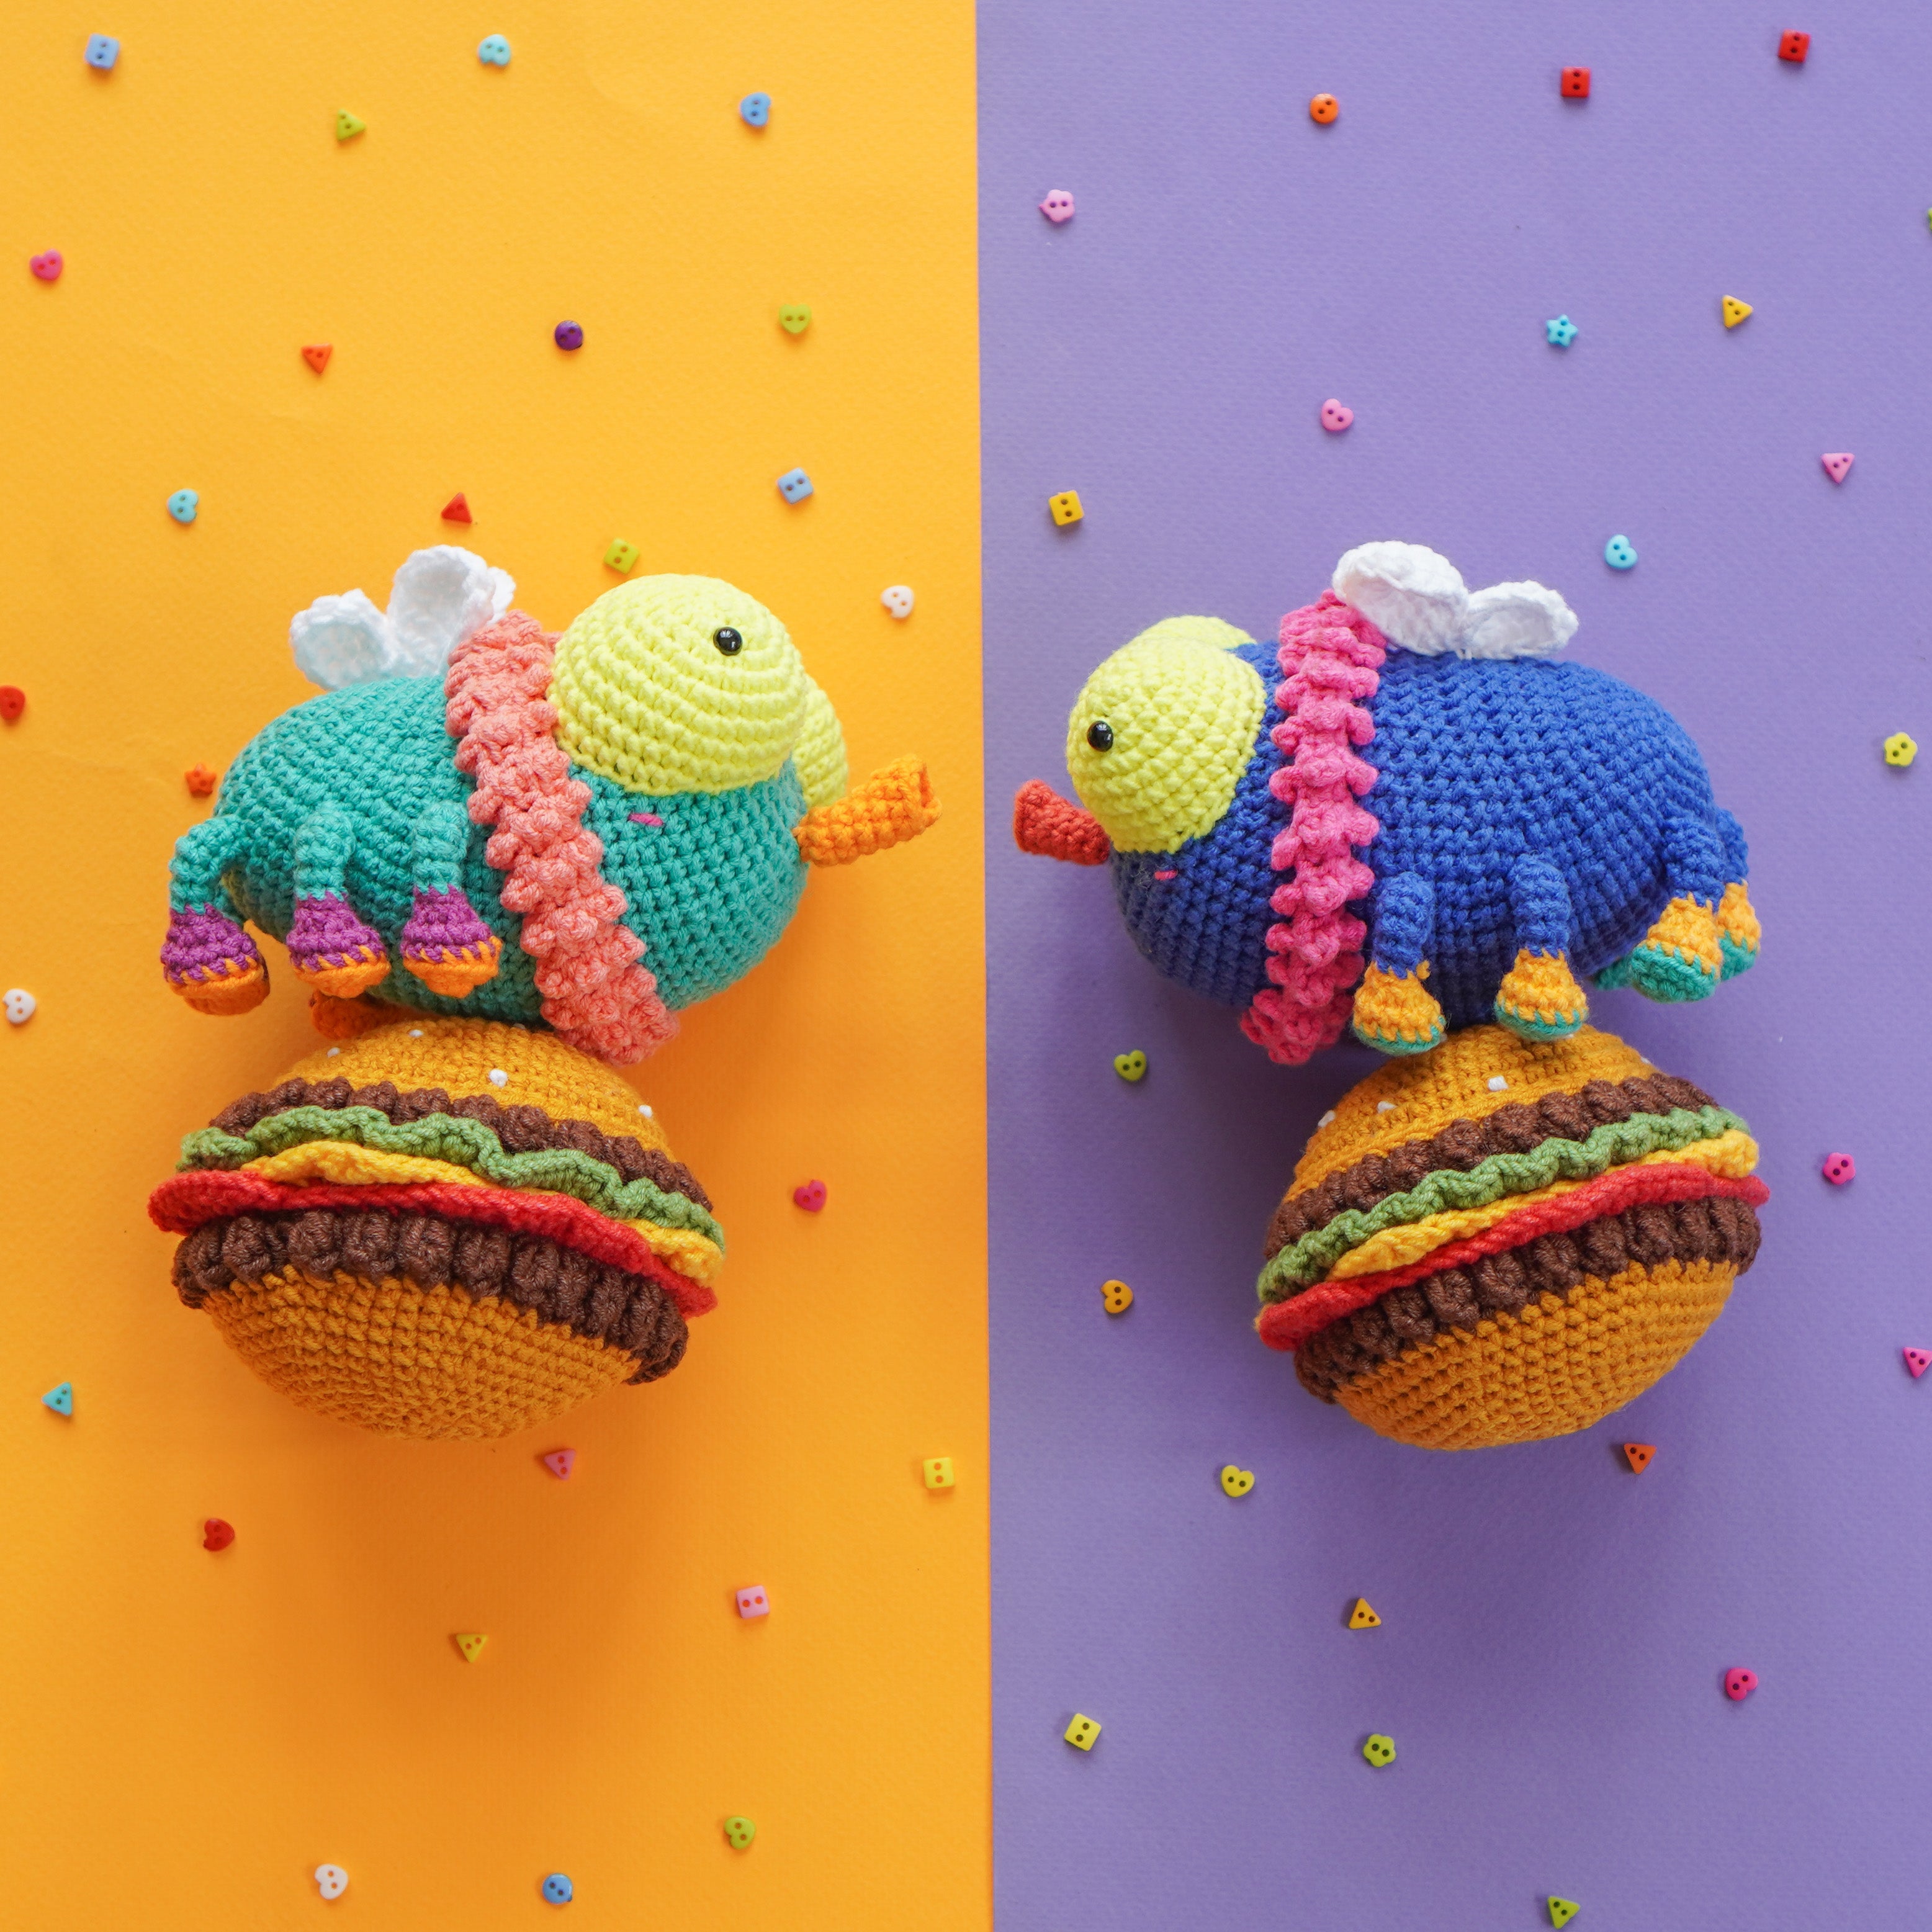 Bee & Fly: Crochet Pattern by Aquariwool (Crochet Doll Pattern/Amigurumi Pattern for Baby gift)